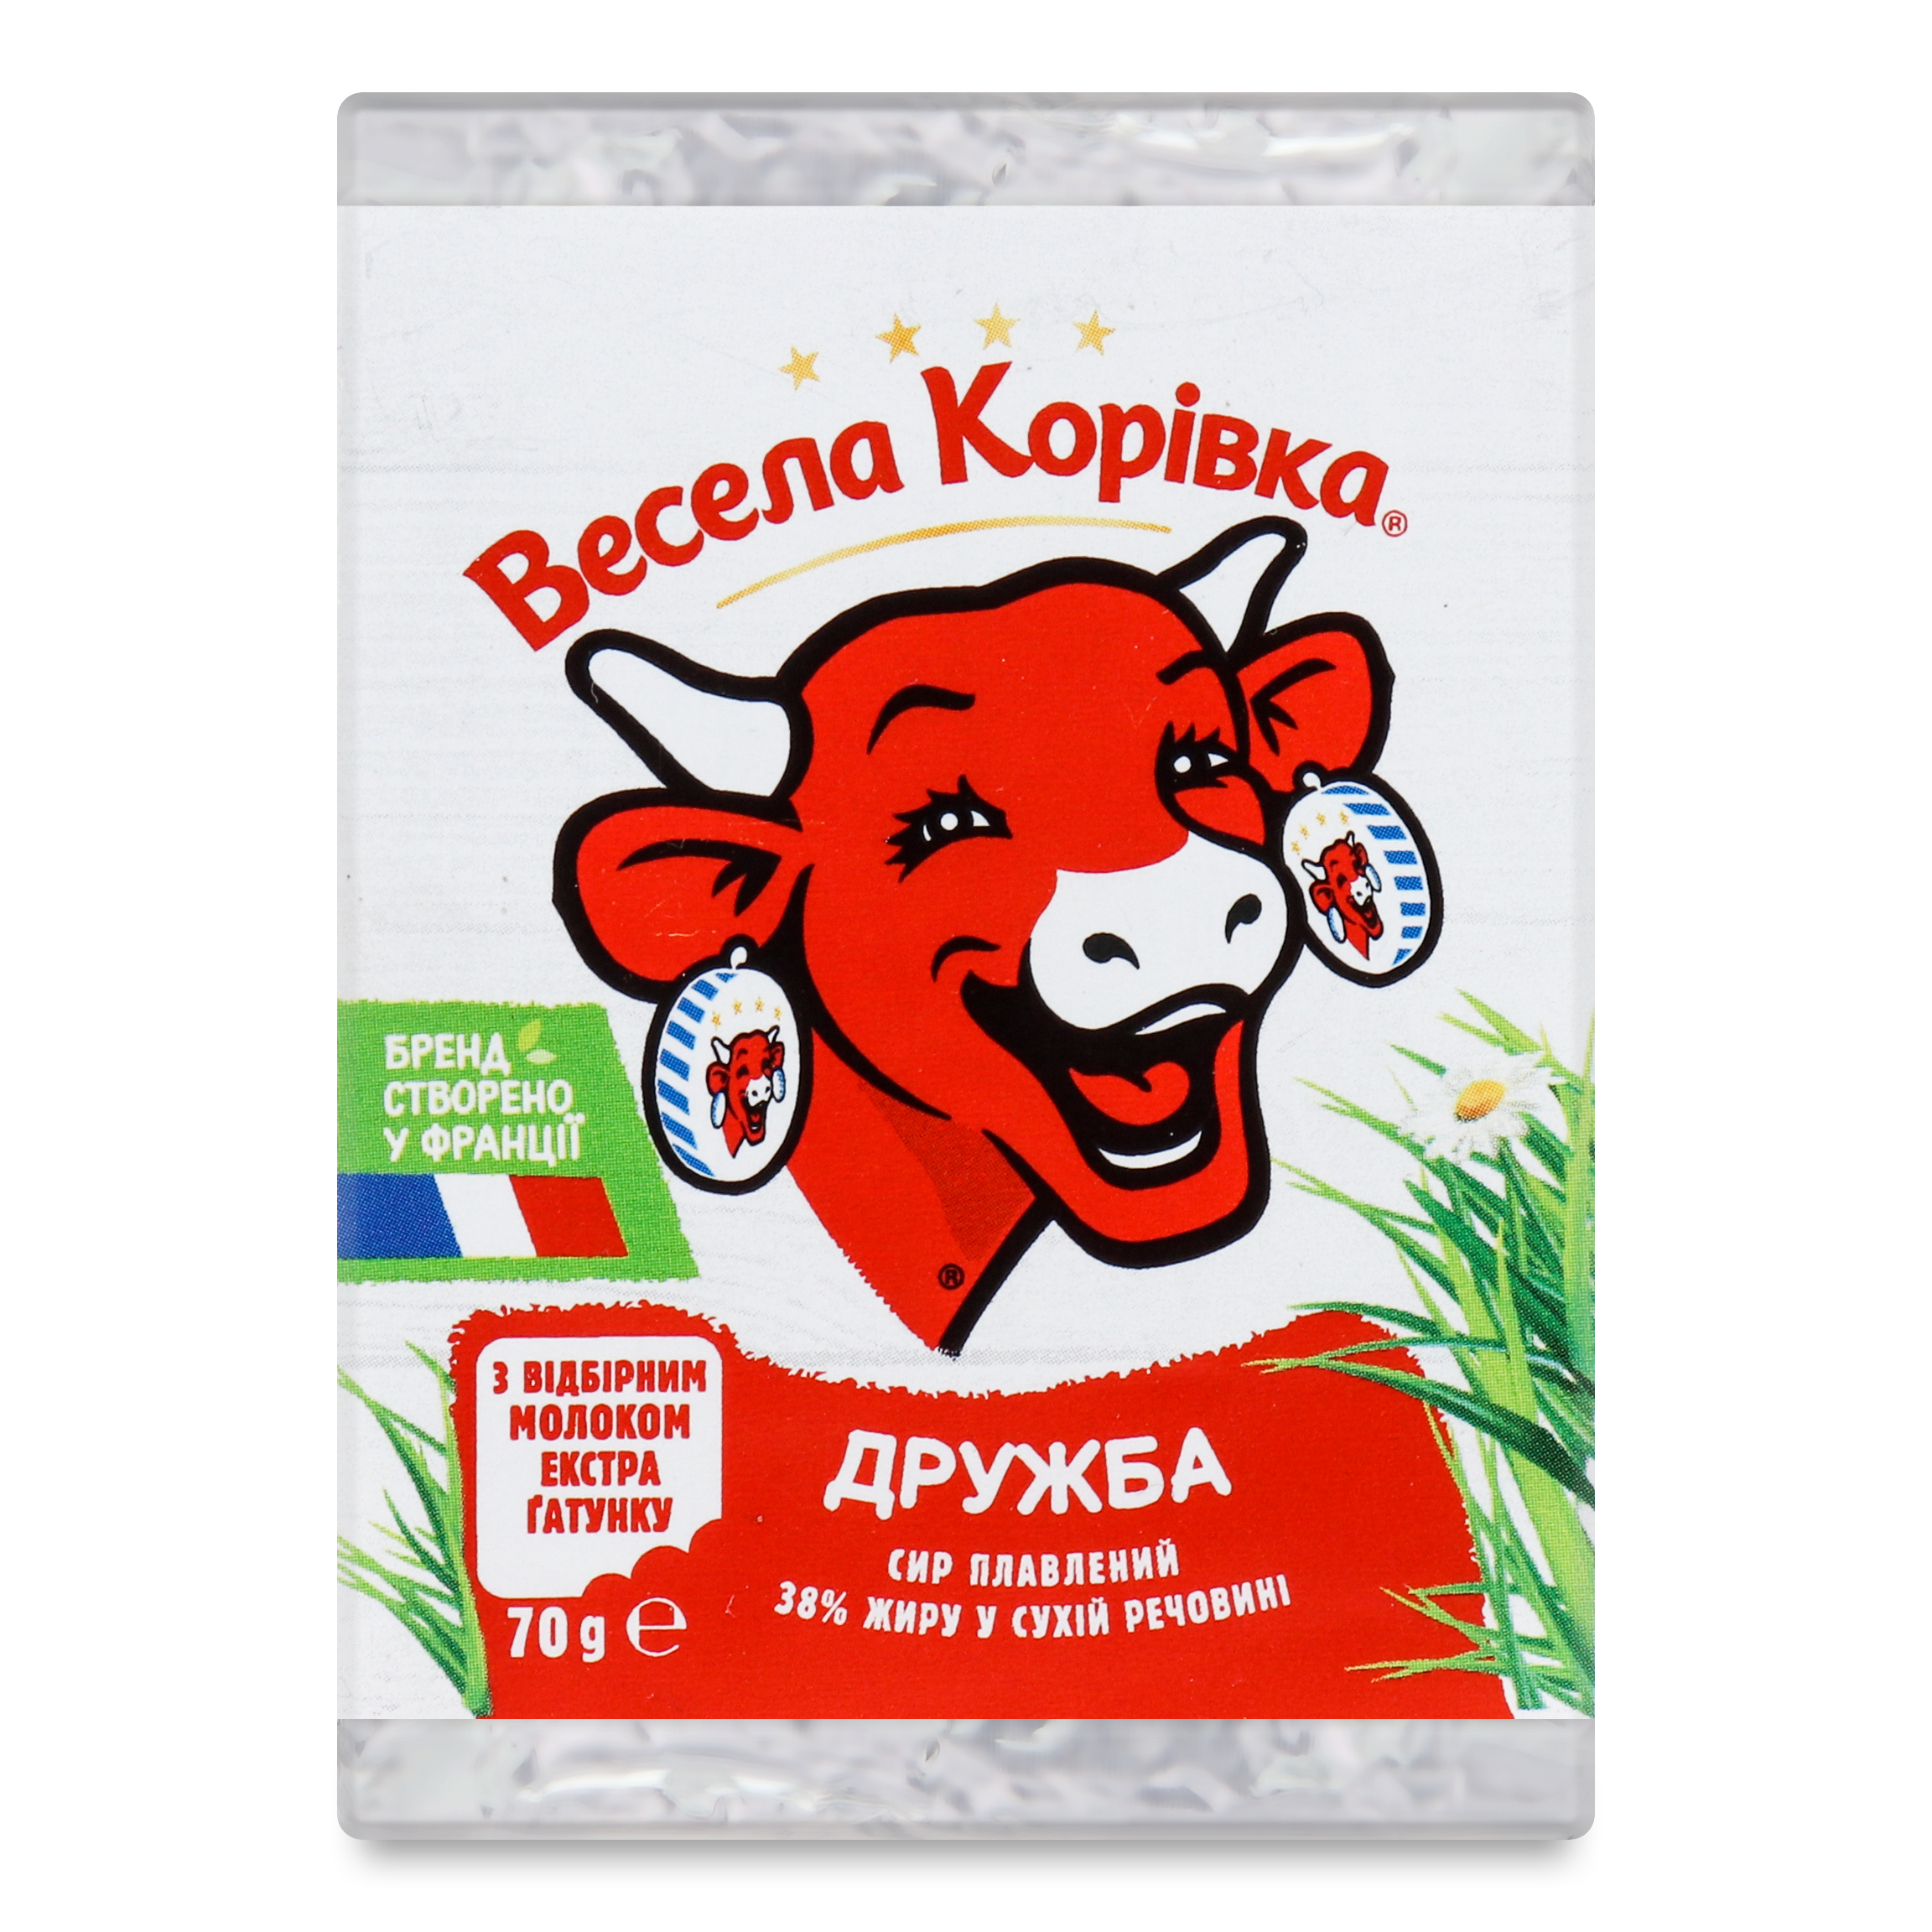 Vesela Korivka Druzhba Processed Сheese 38% 70g